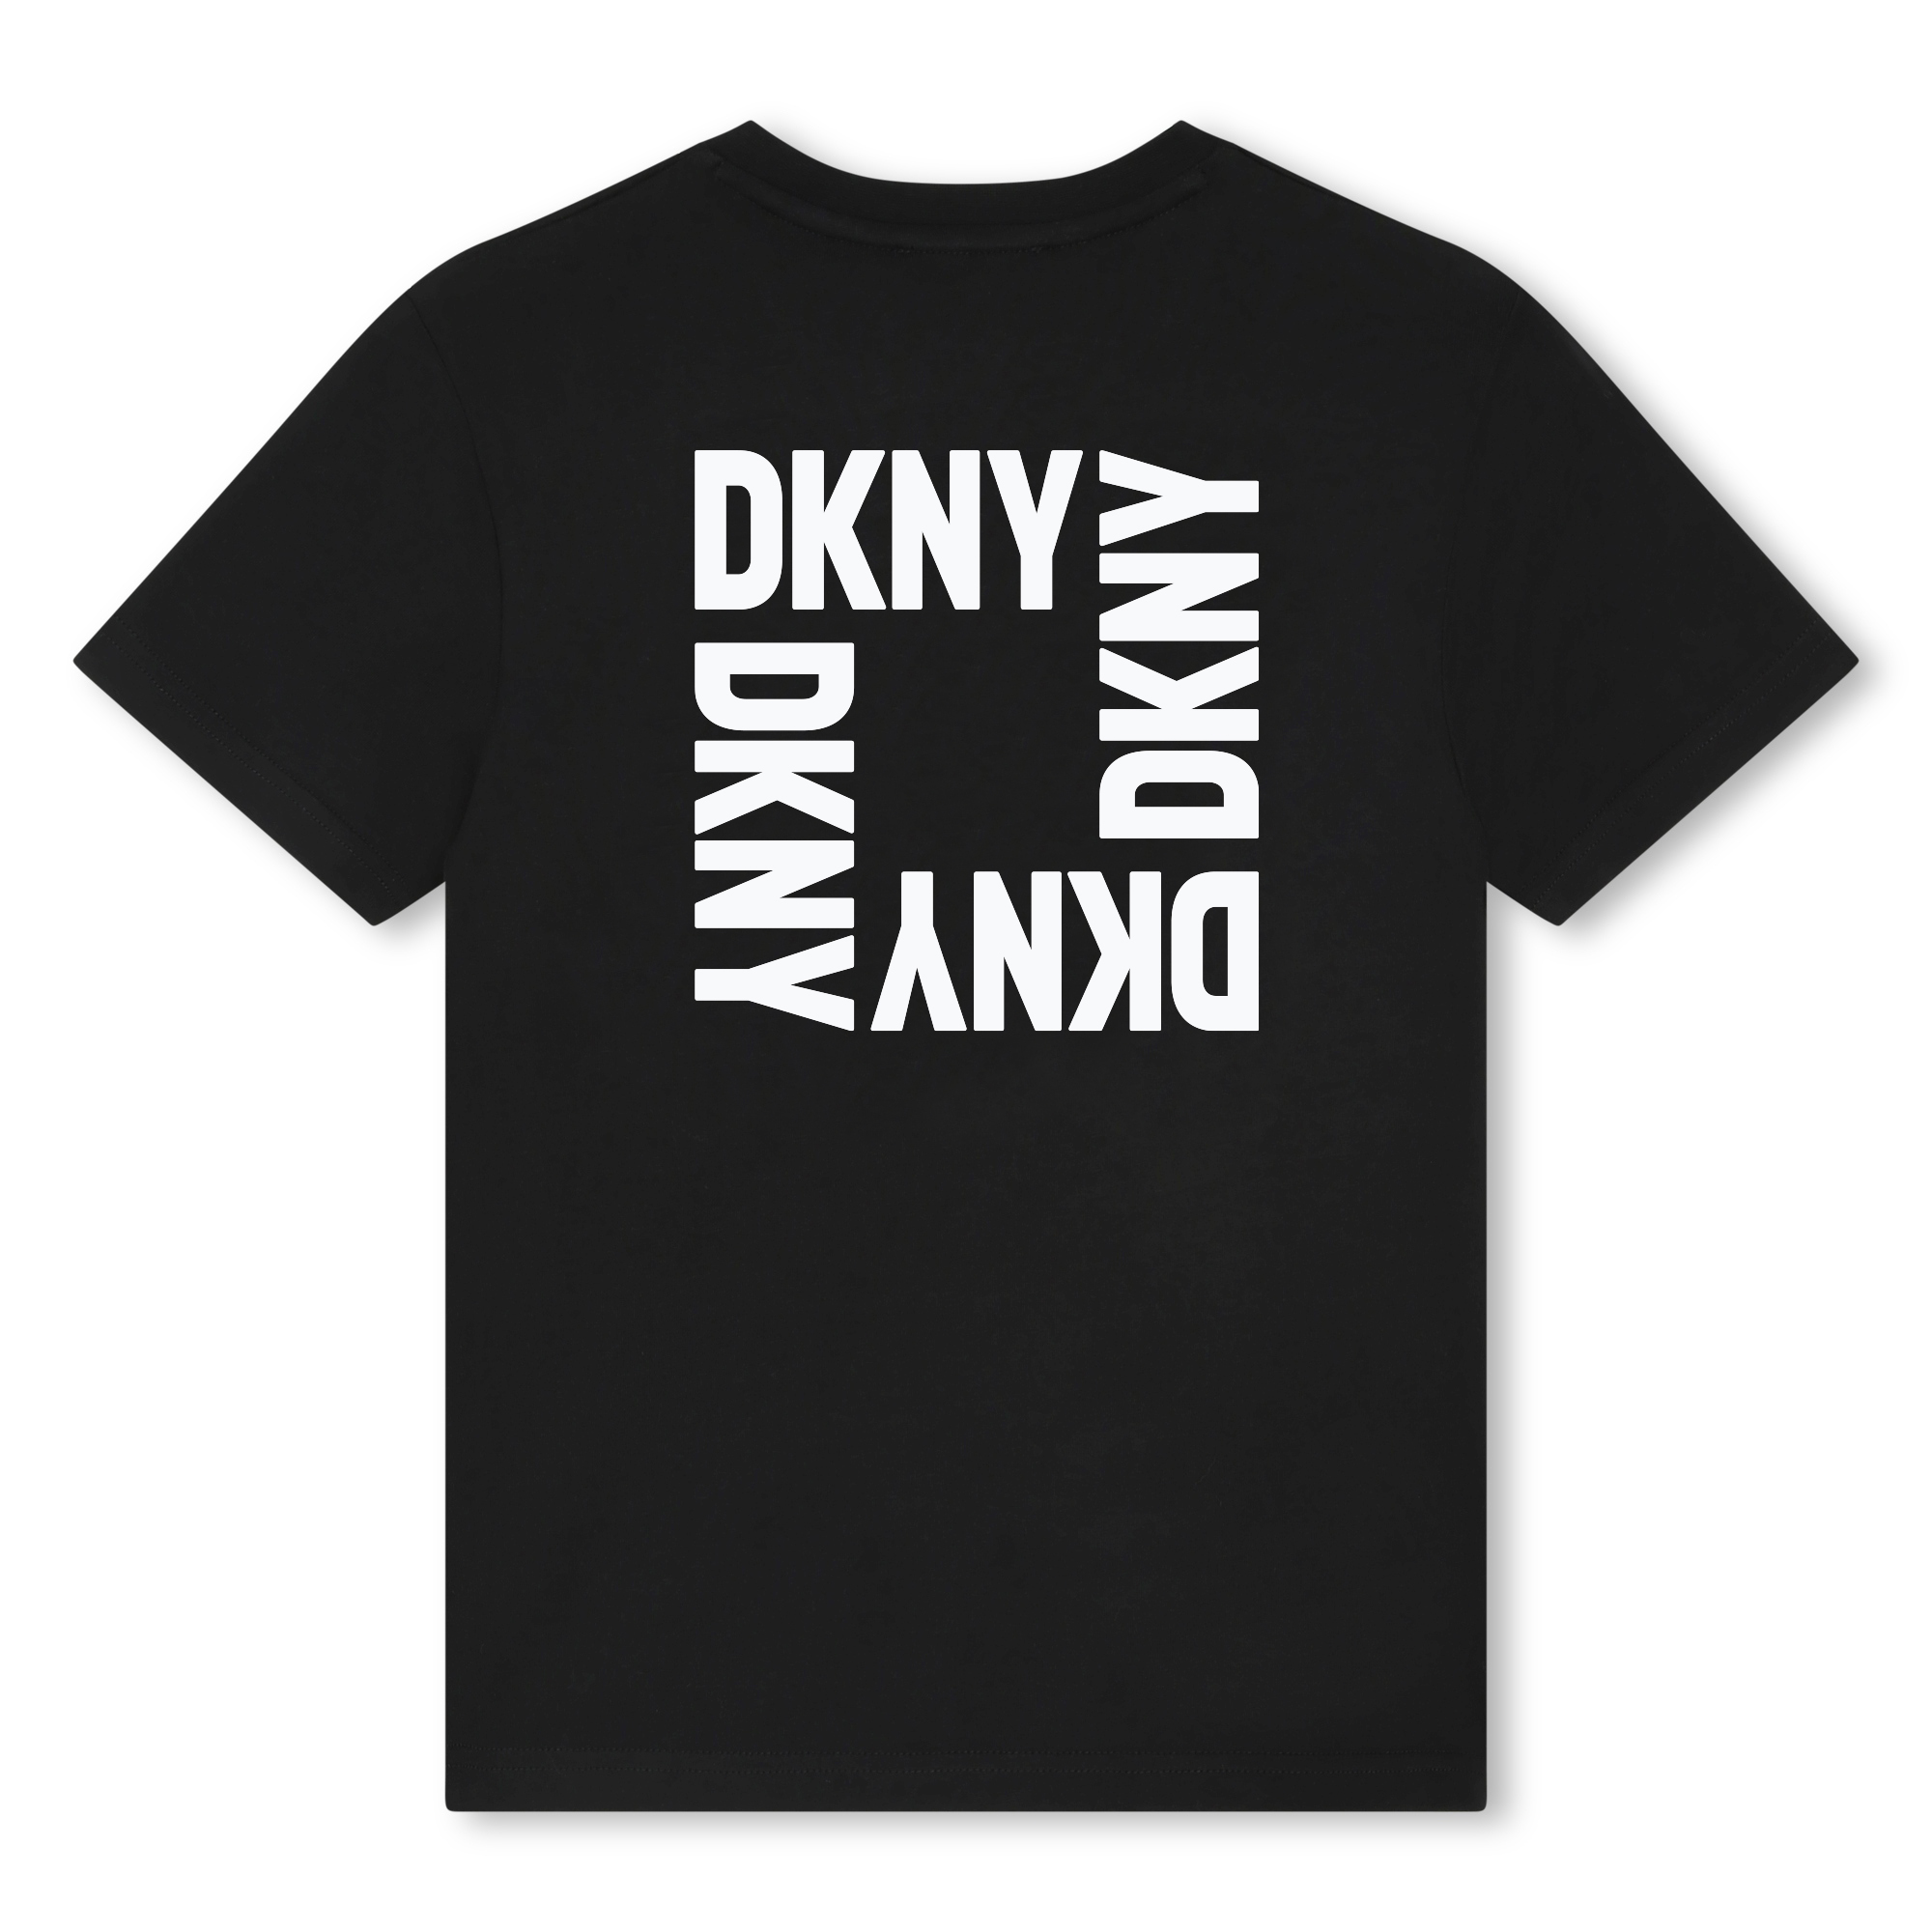 Uniseks katoenen T-shirt DKNY Voor